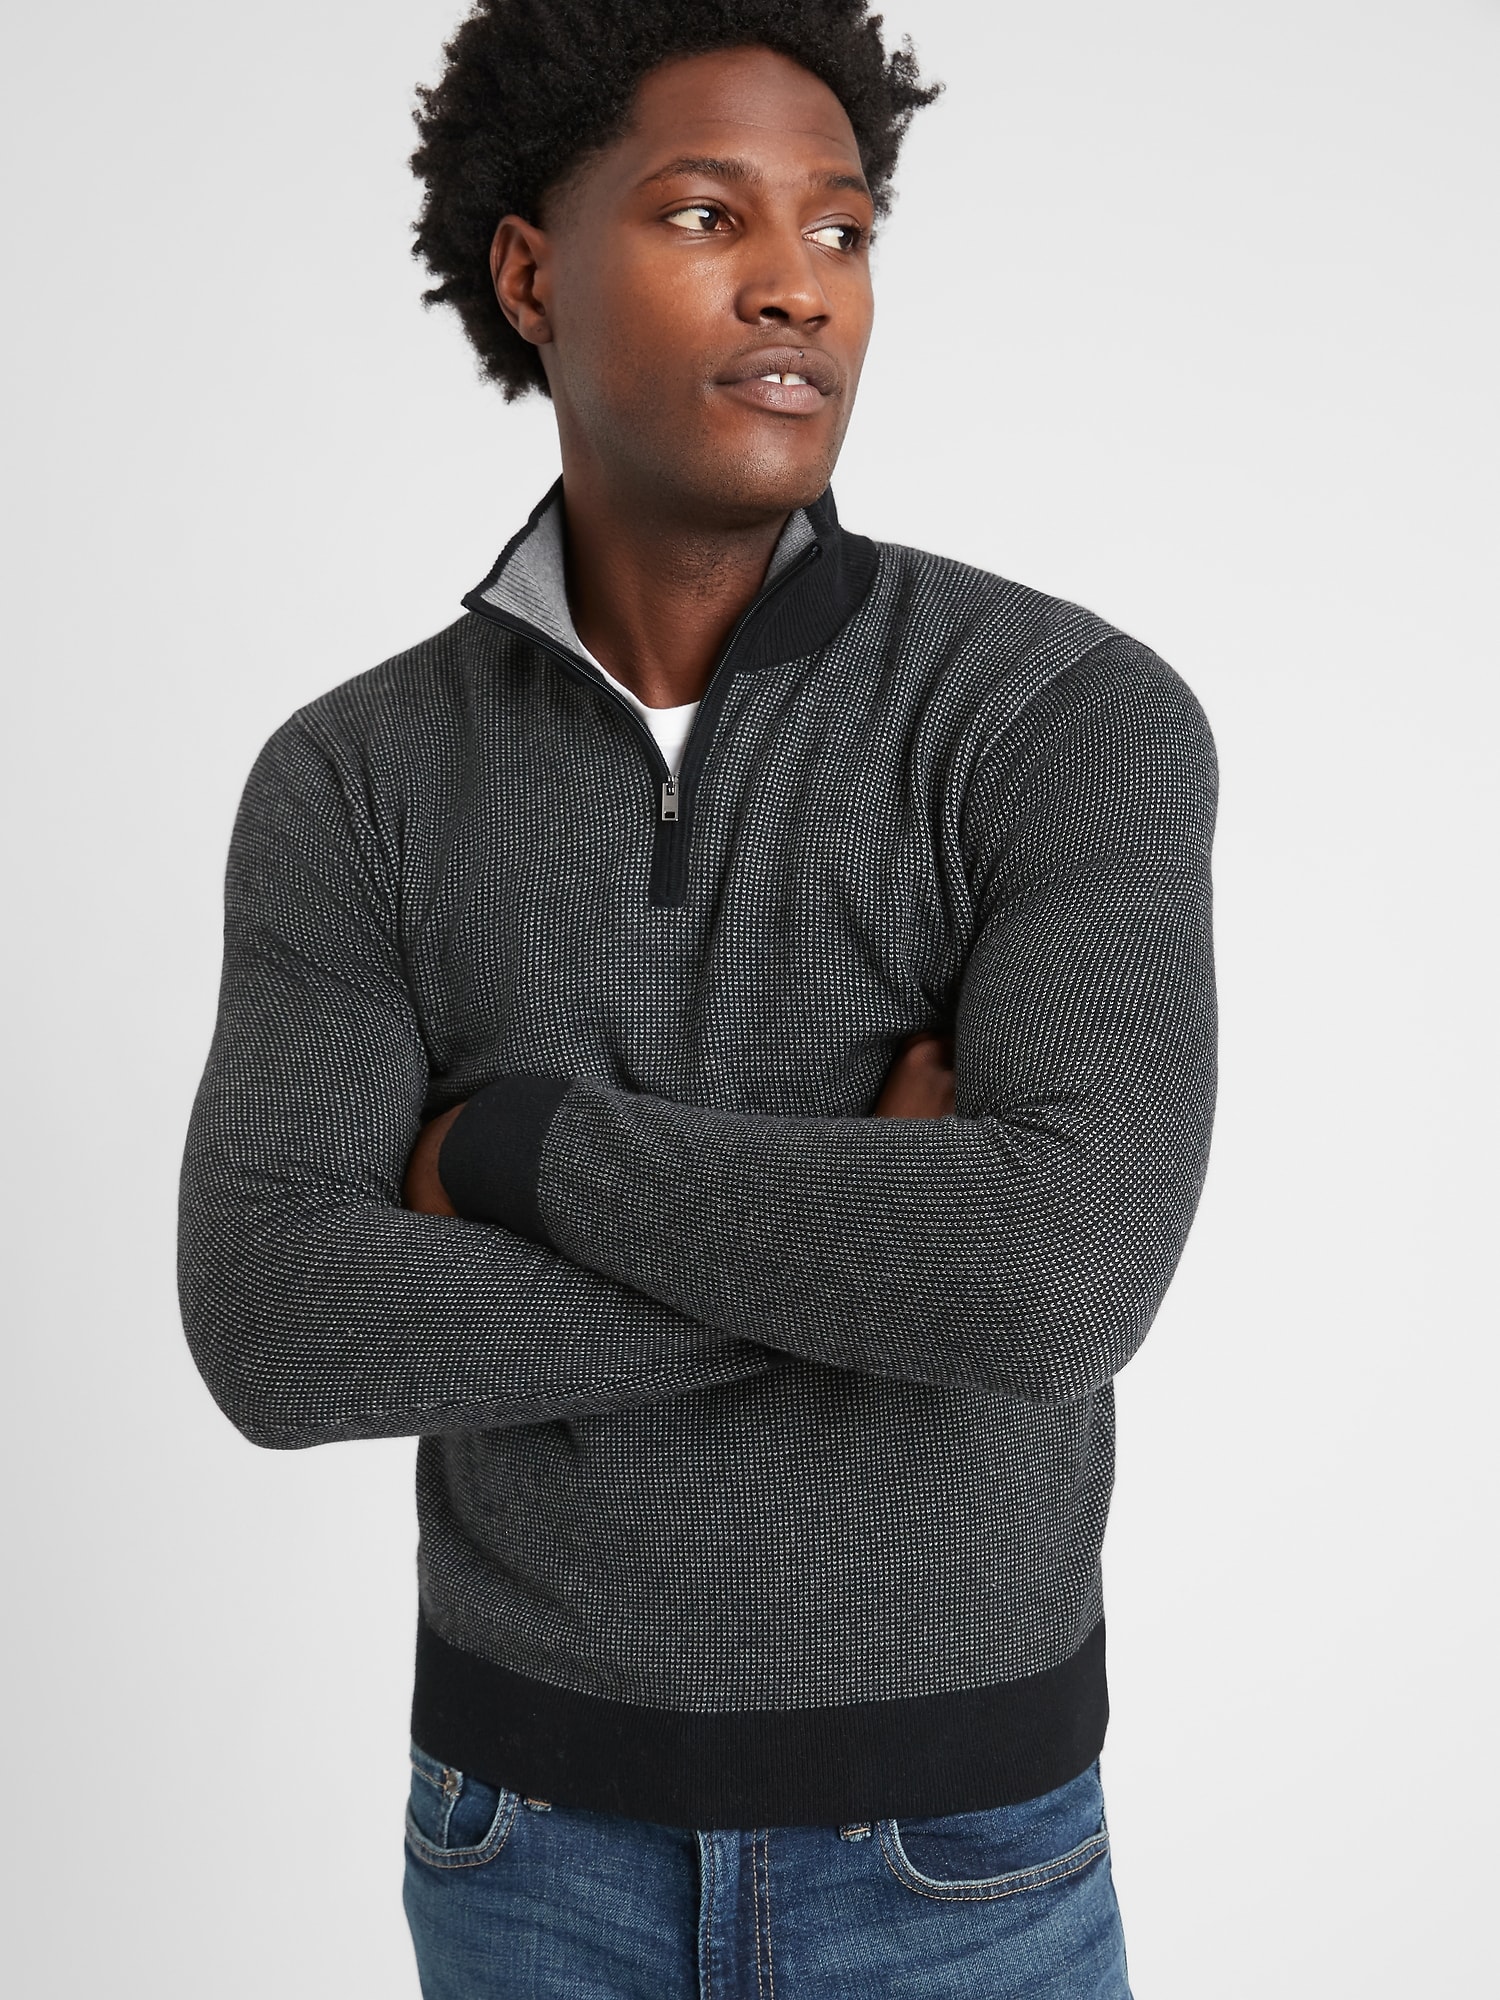 Premium Luxe 1/4 Zip-Neck Sweater | Banana Republic Factory